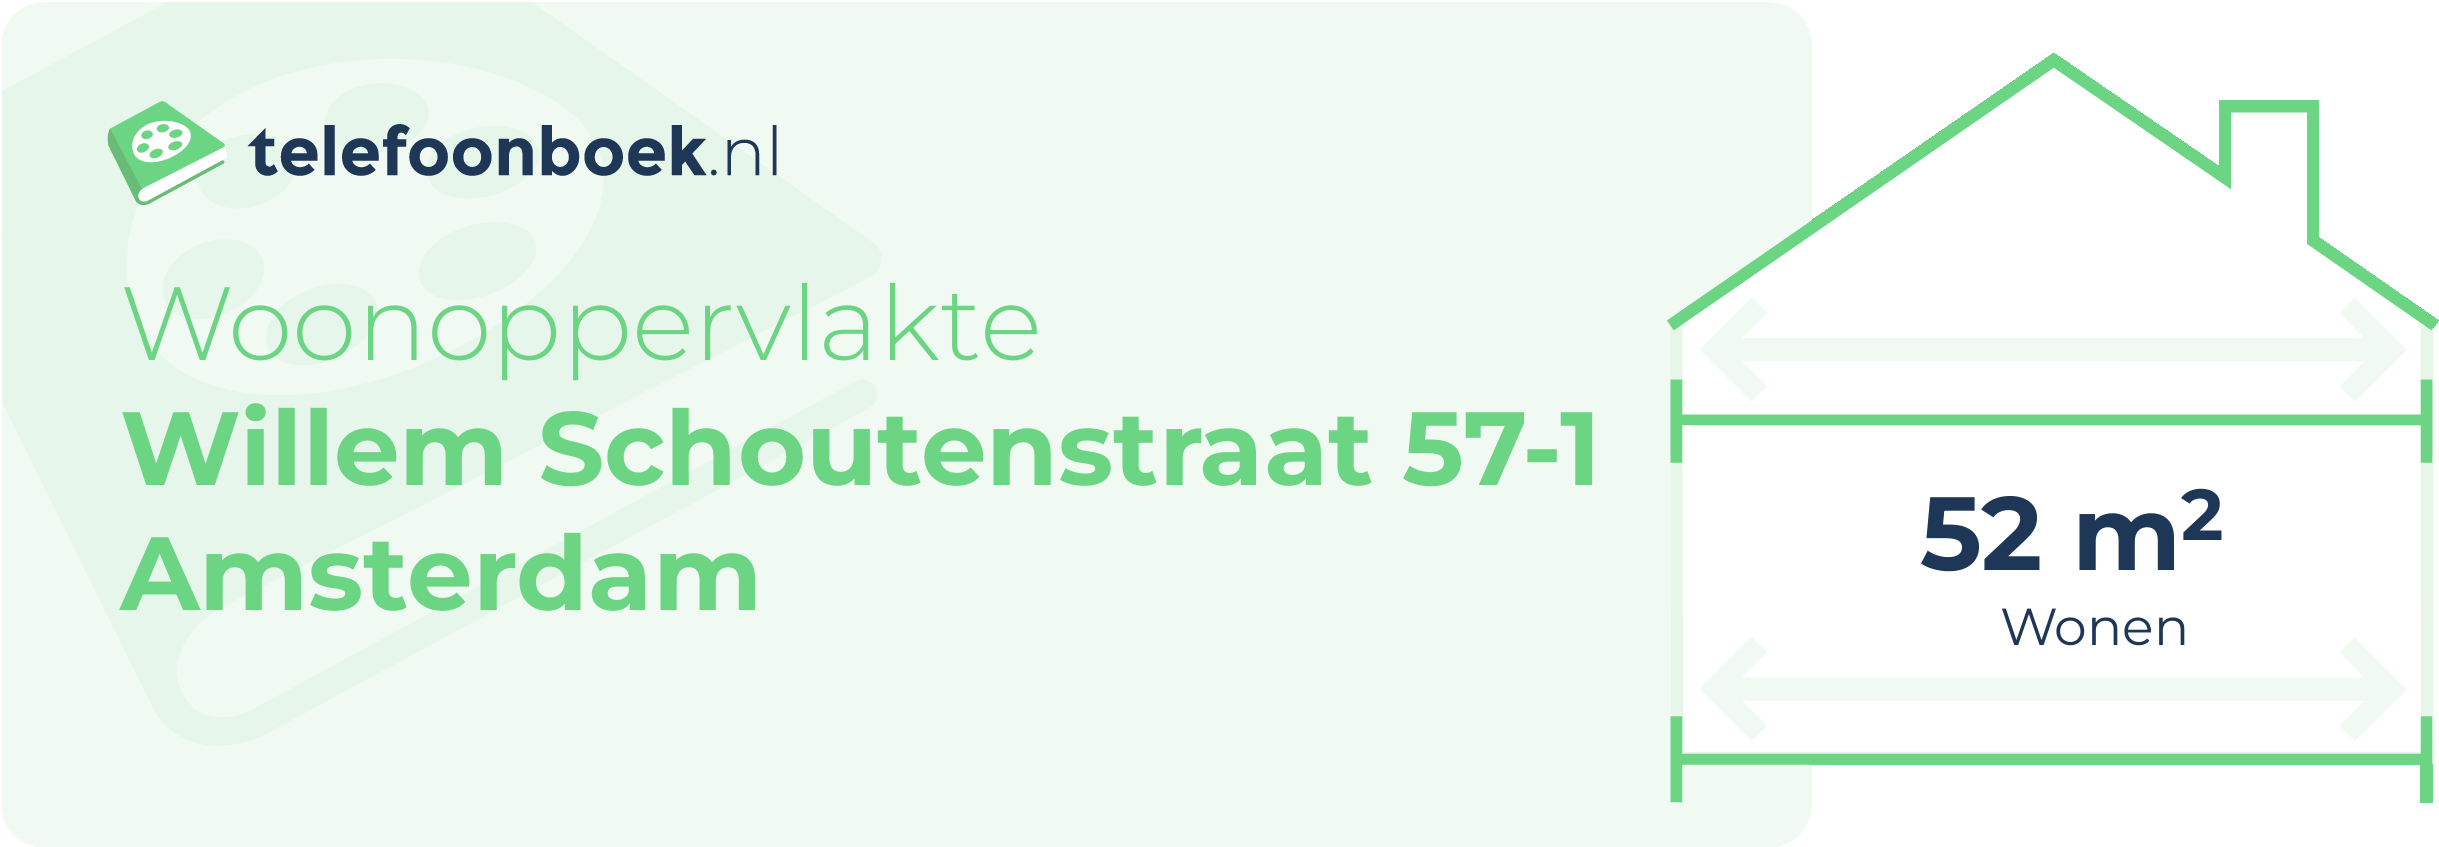 Woonoppervlakte Willem Schoutenstraat 57-1 Amsterdam